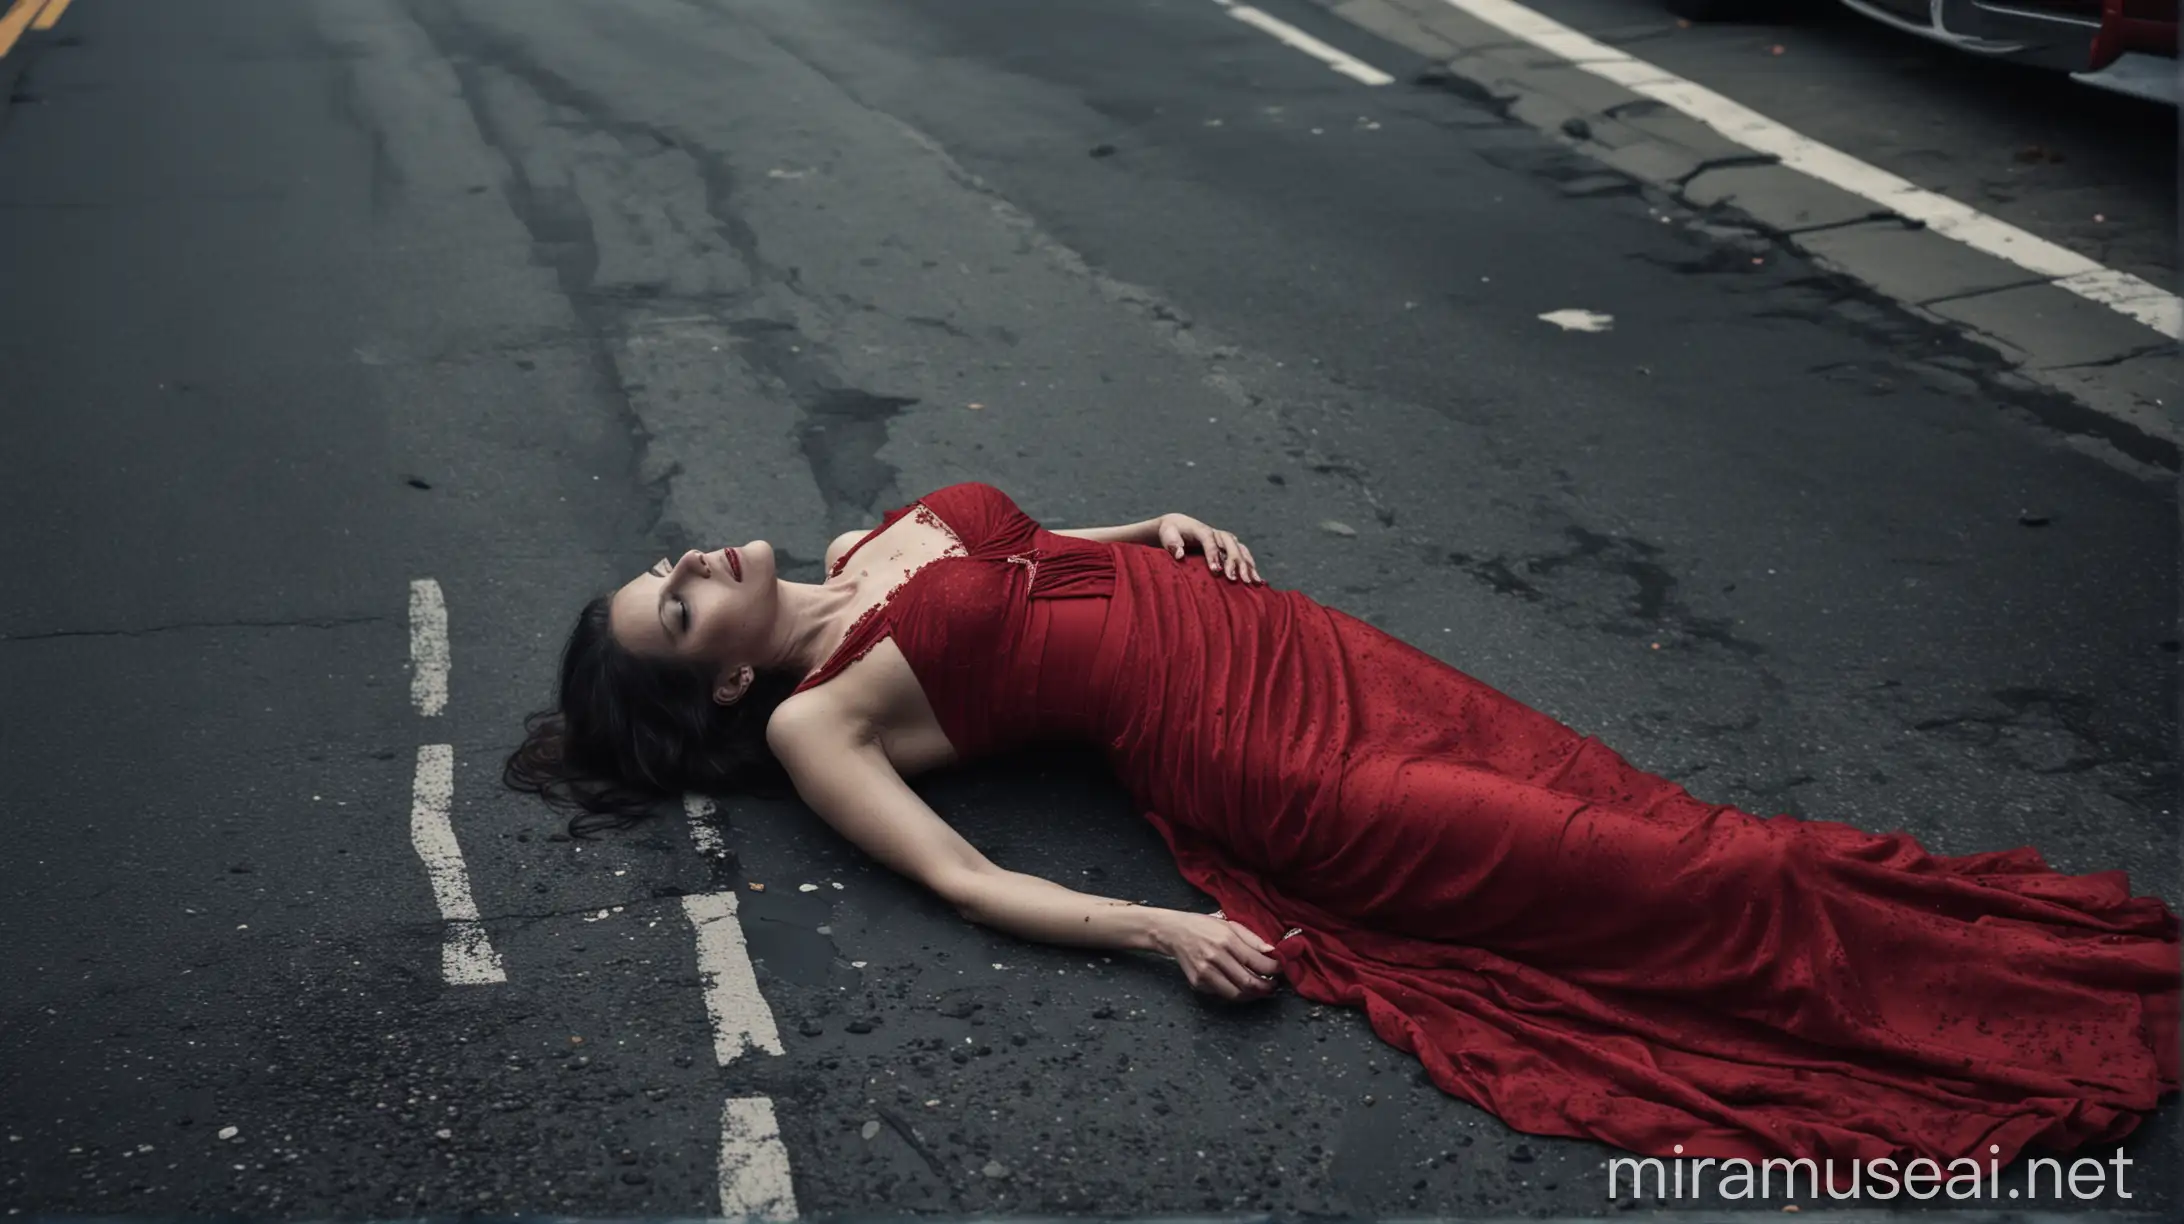 Cadavre de femme morte sur la route dans les rues de new york. Ambiance sombre. Elle a une robe rouge.